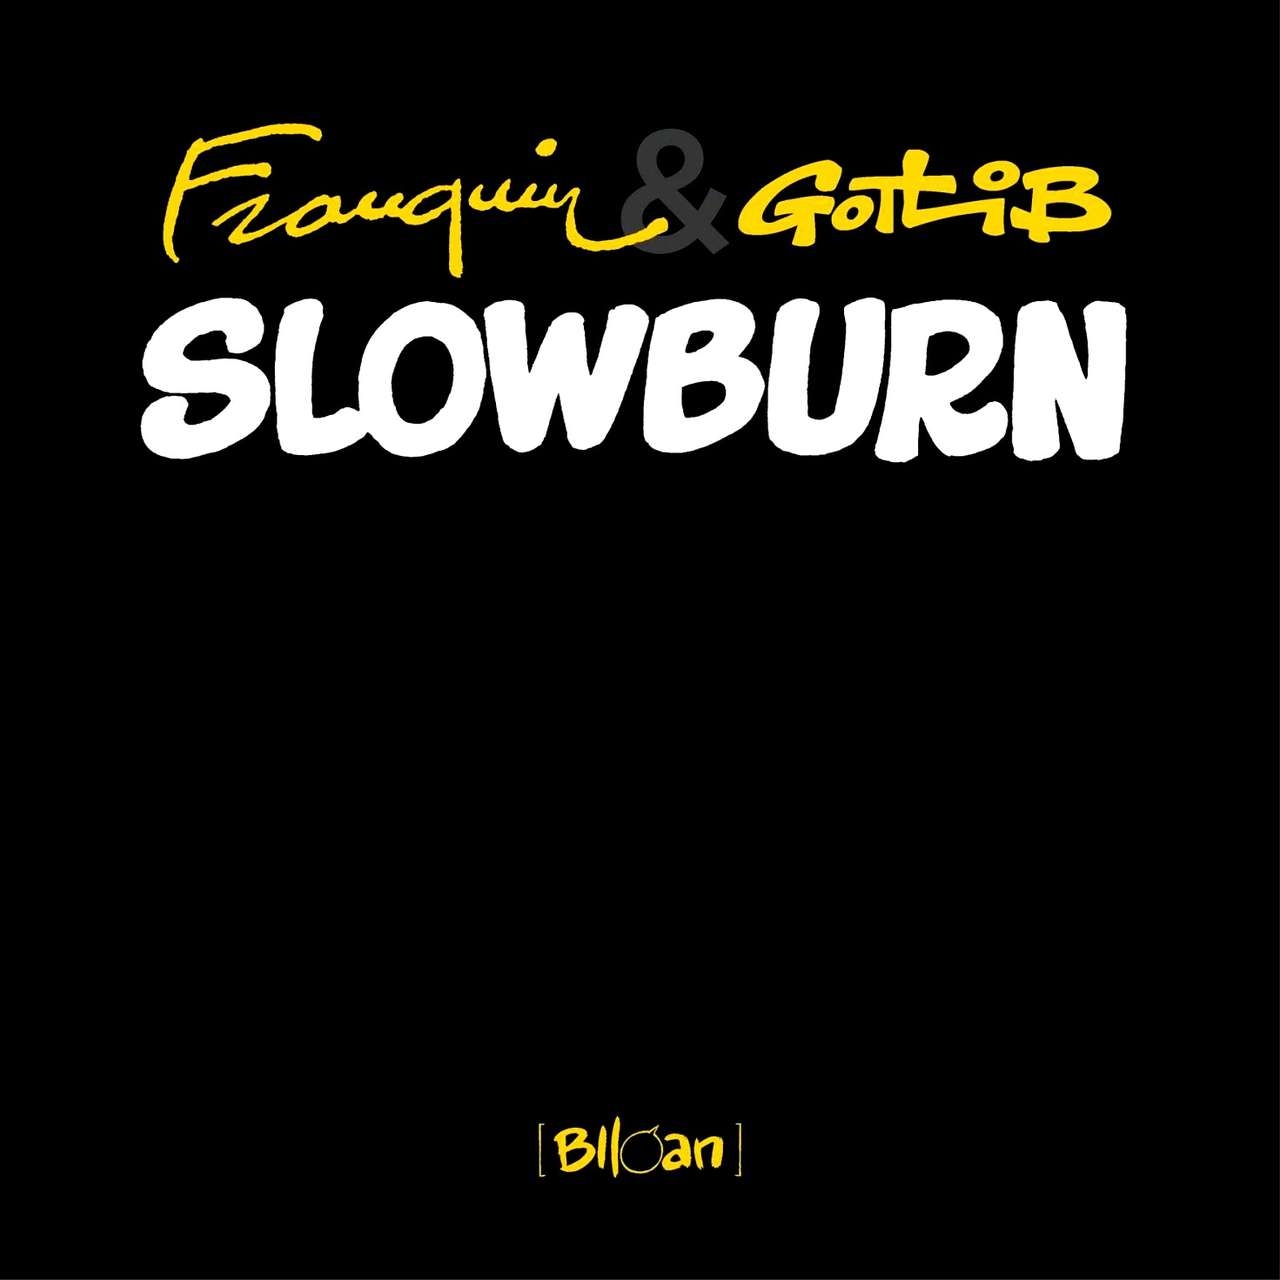 Franquin & Gotlib - Slowburn (Dutch) 1